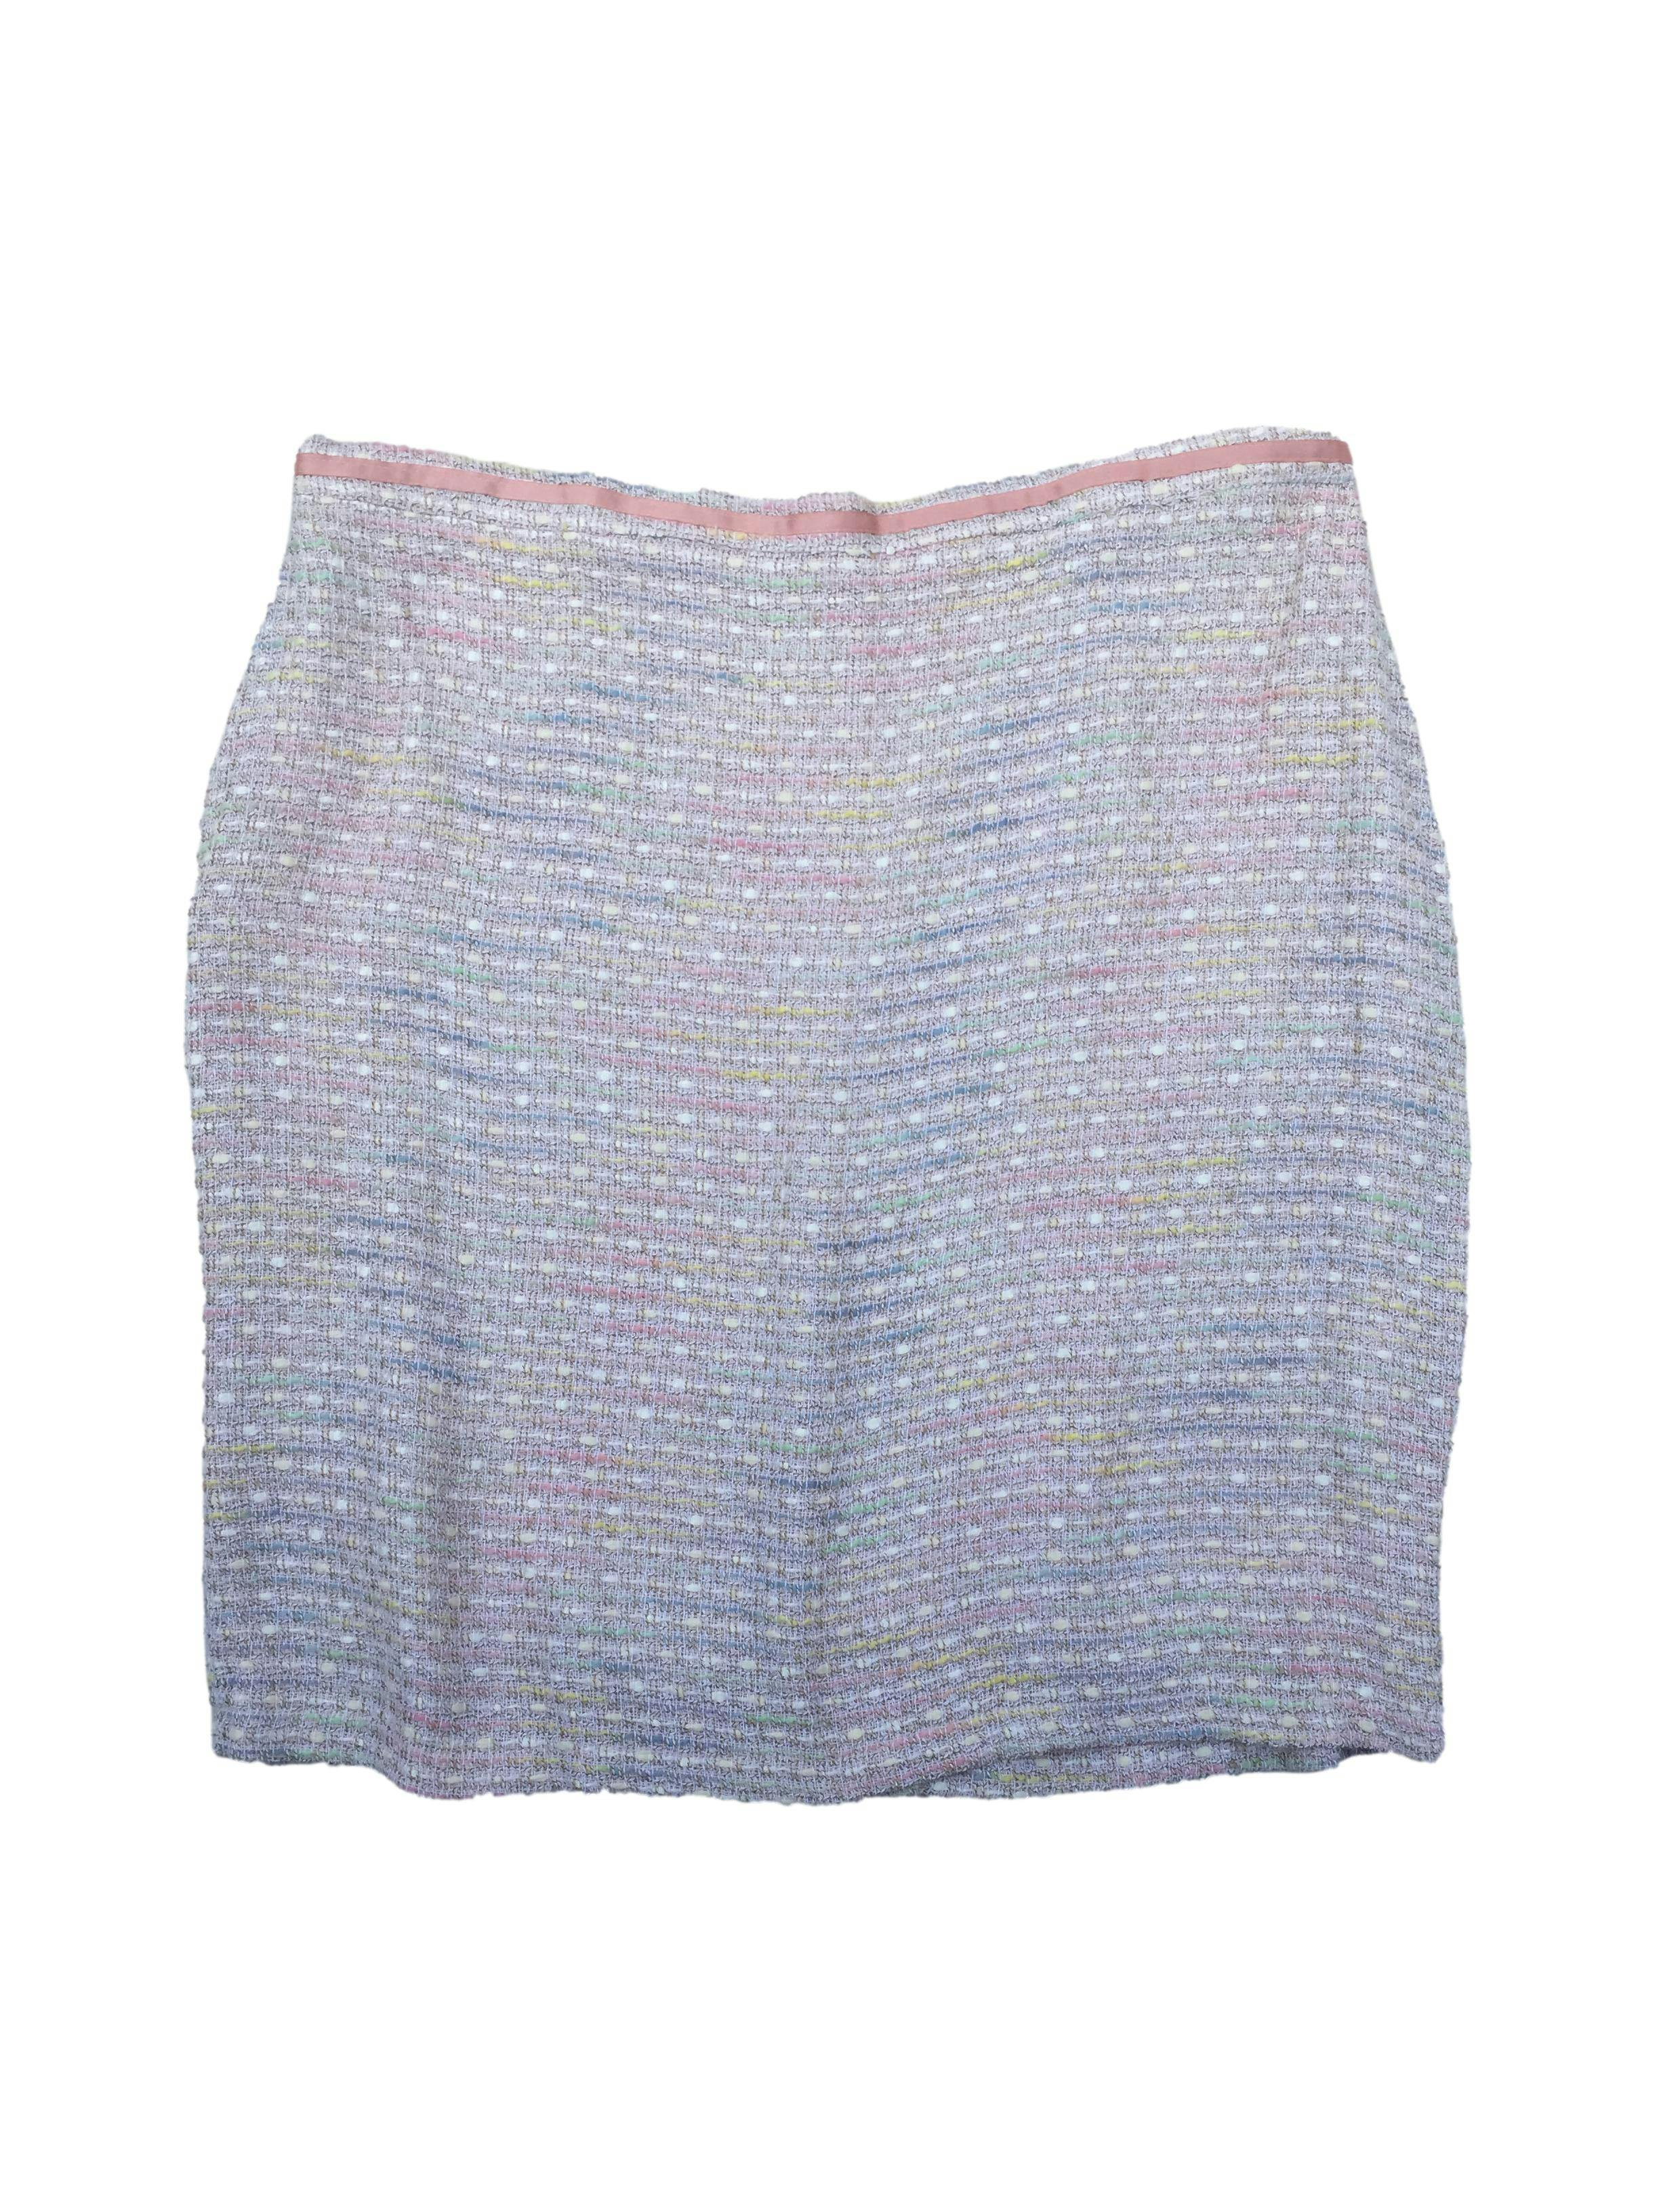 Falda de tweed palo rosa y tonos pasteles, forrada, con cierre posterior. Cintura: 102cm, Largo: 62cm. Nuevo con etiqueta